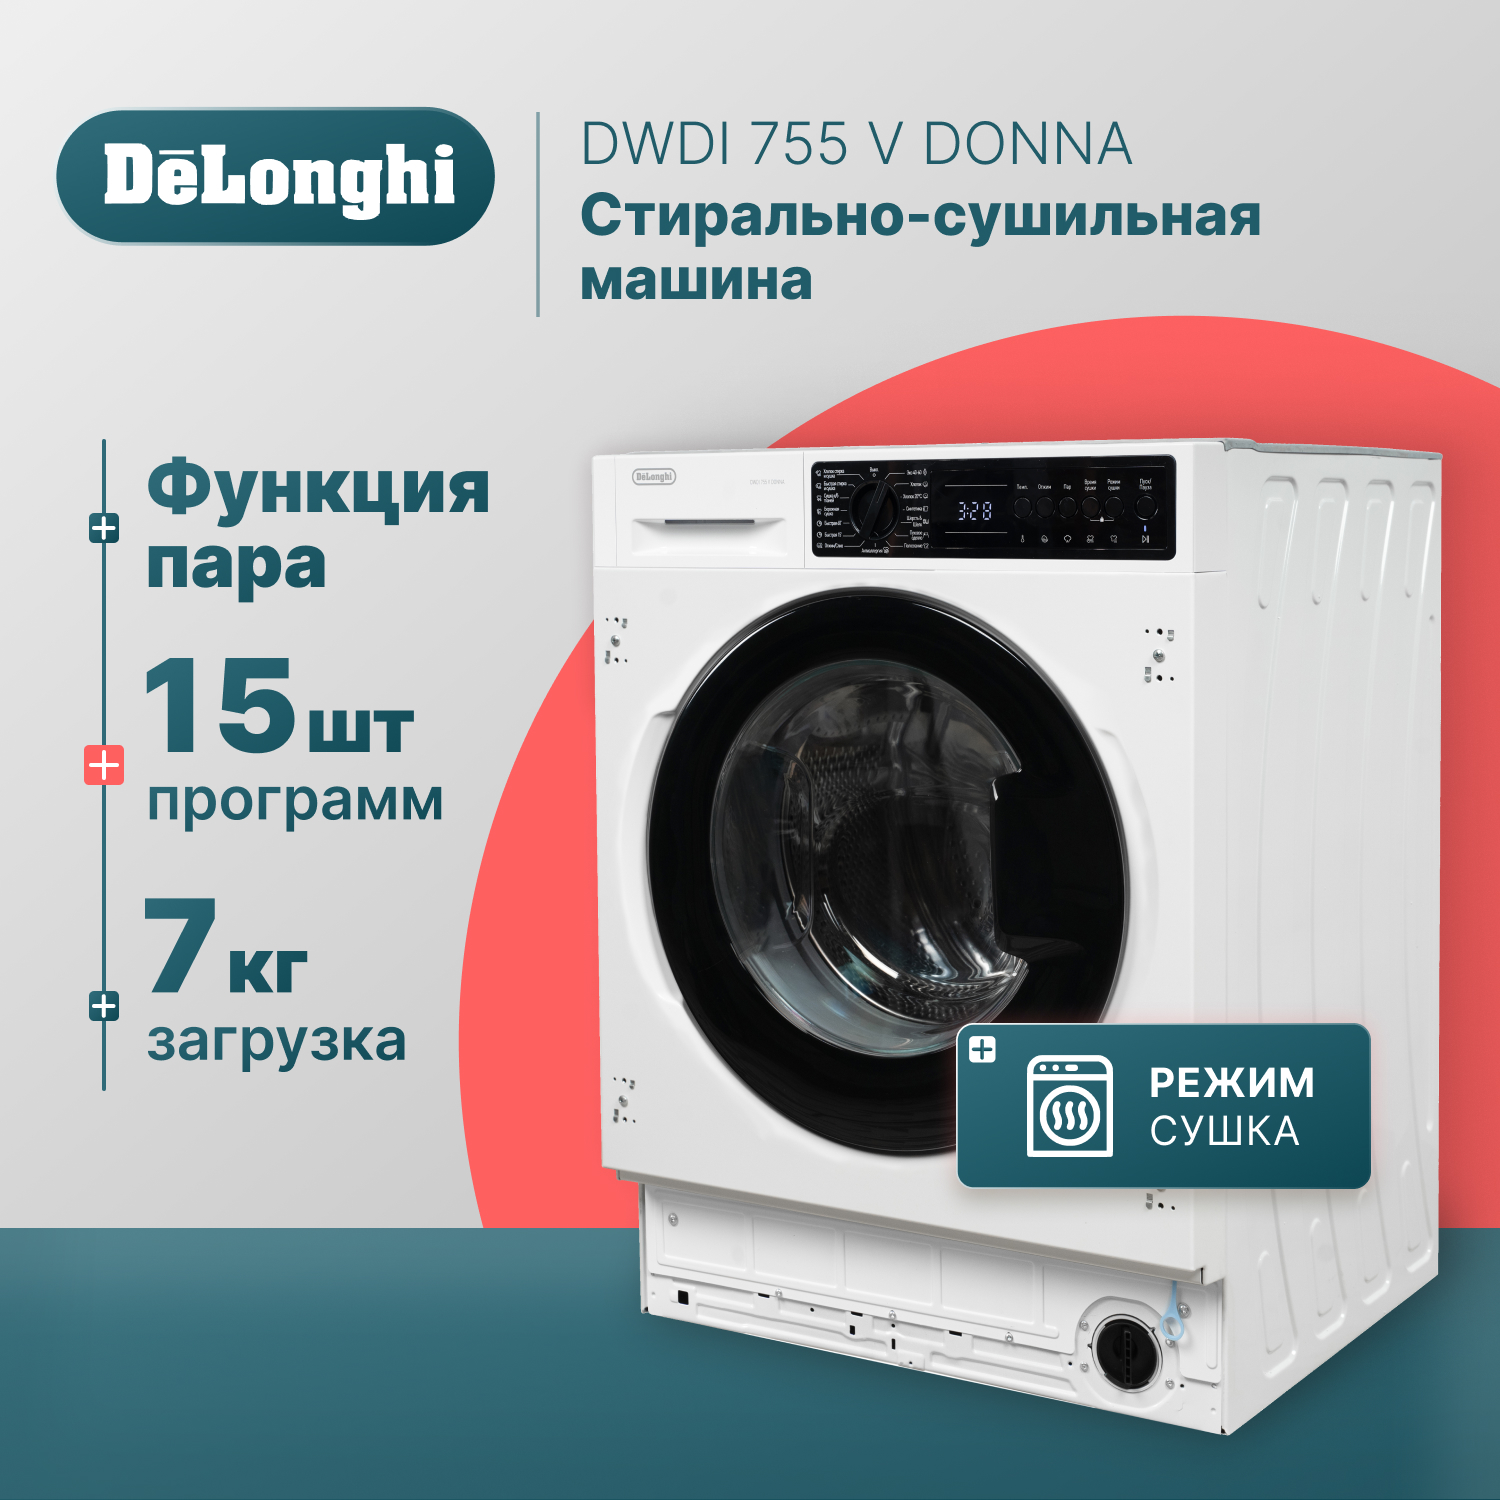 Встраиваемая стиральная машина Delonghi DWDI 755 V DONNA одеяло легкое 140x205 см файберсофт